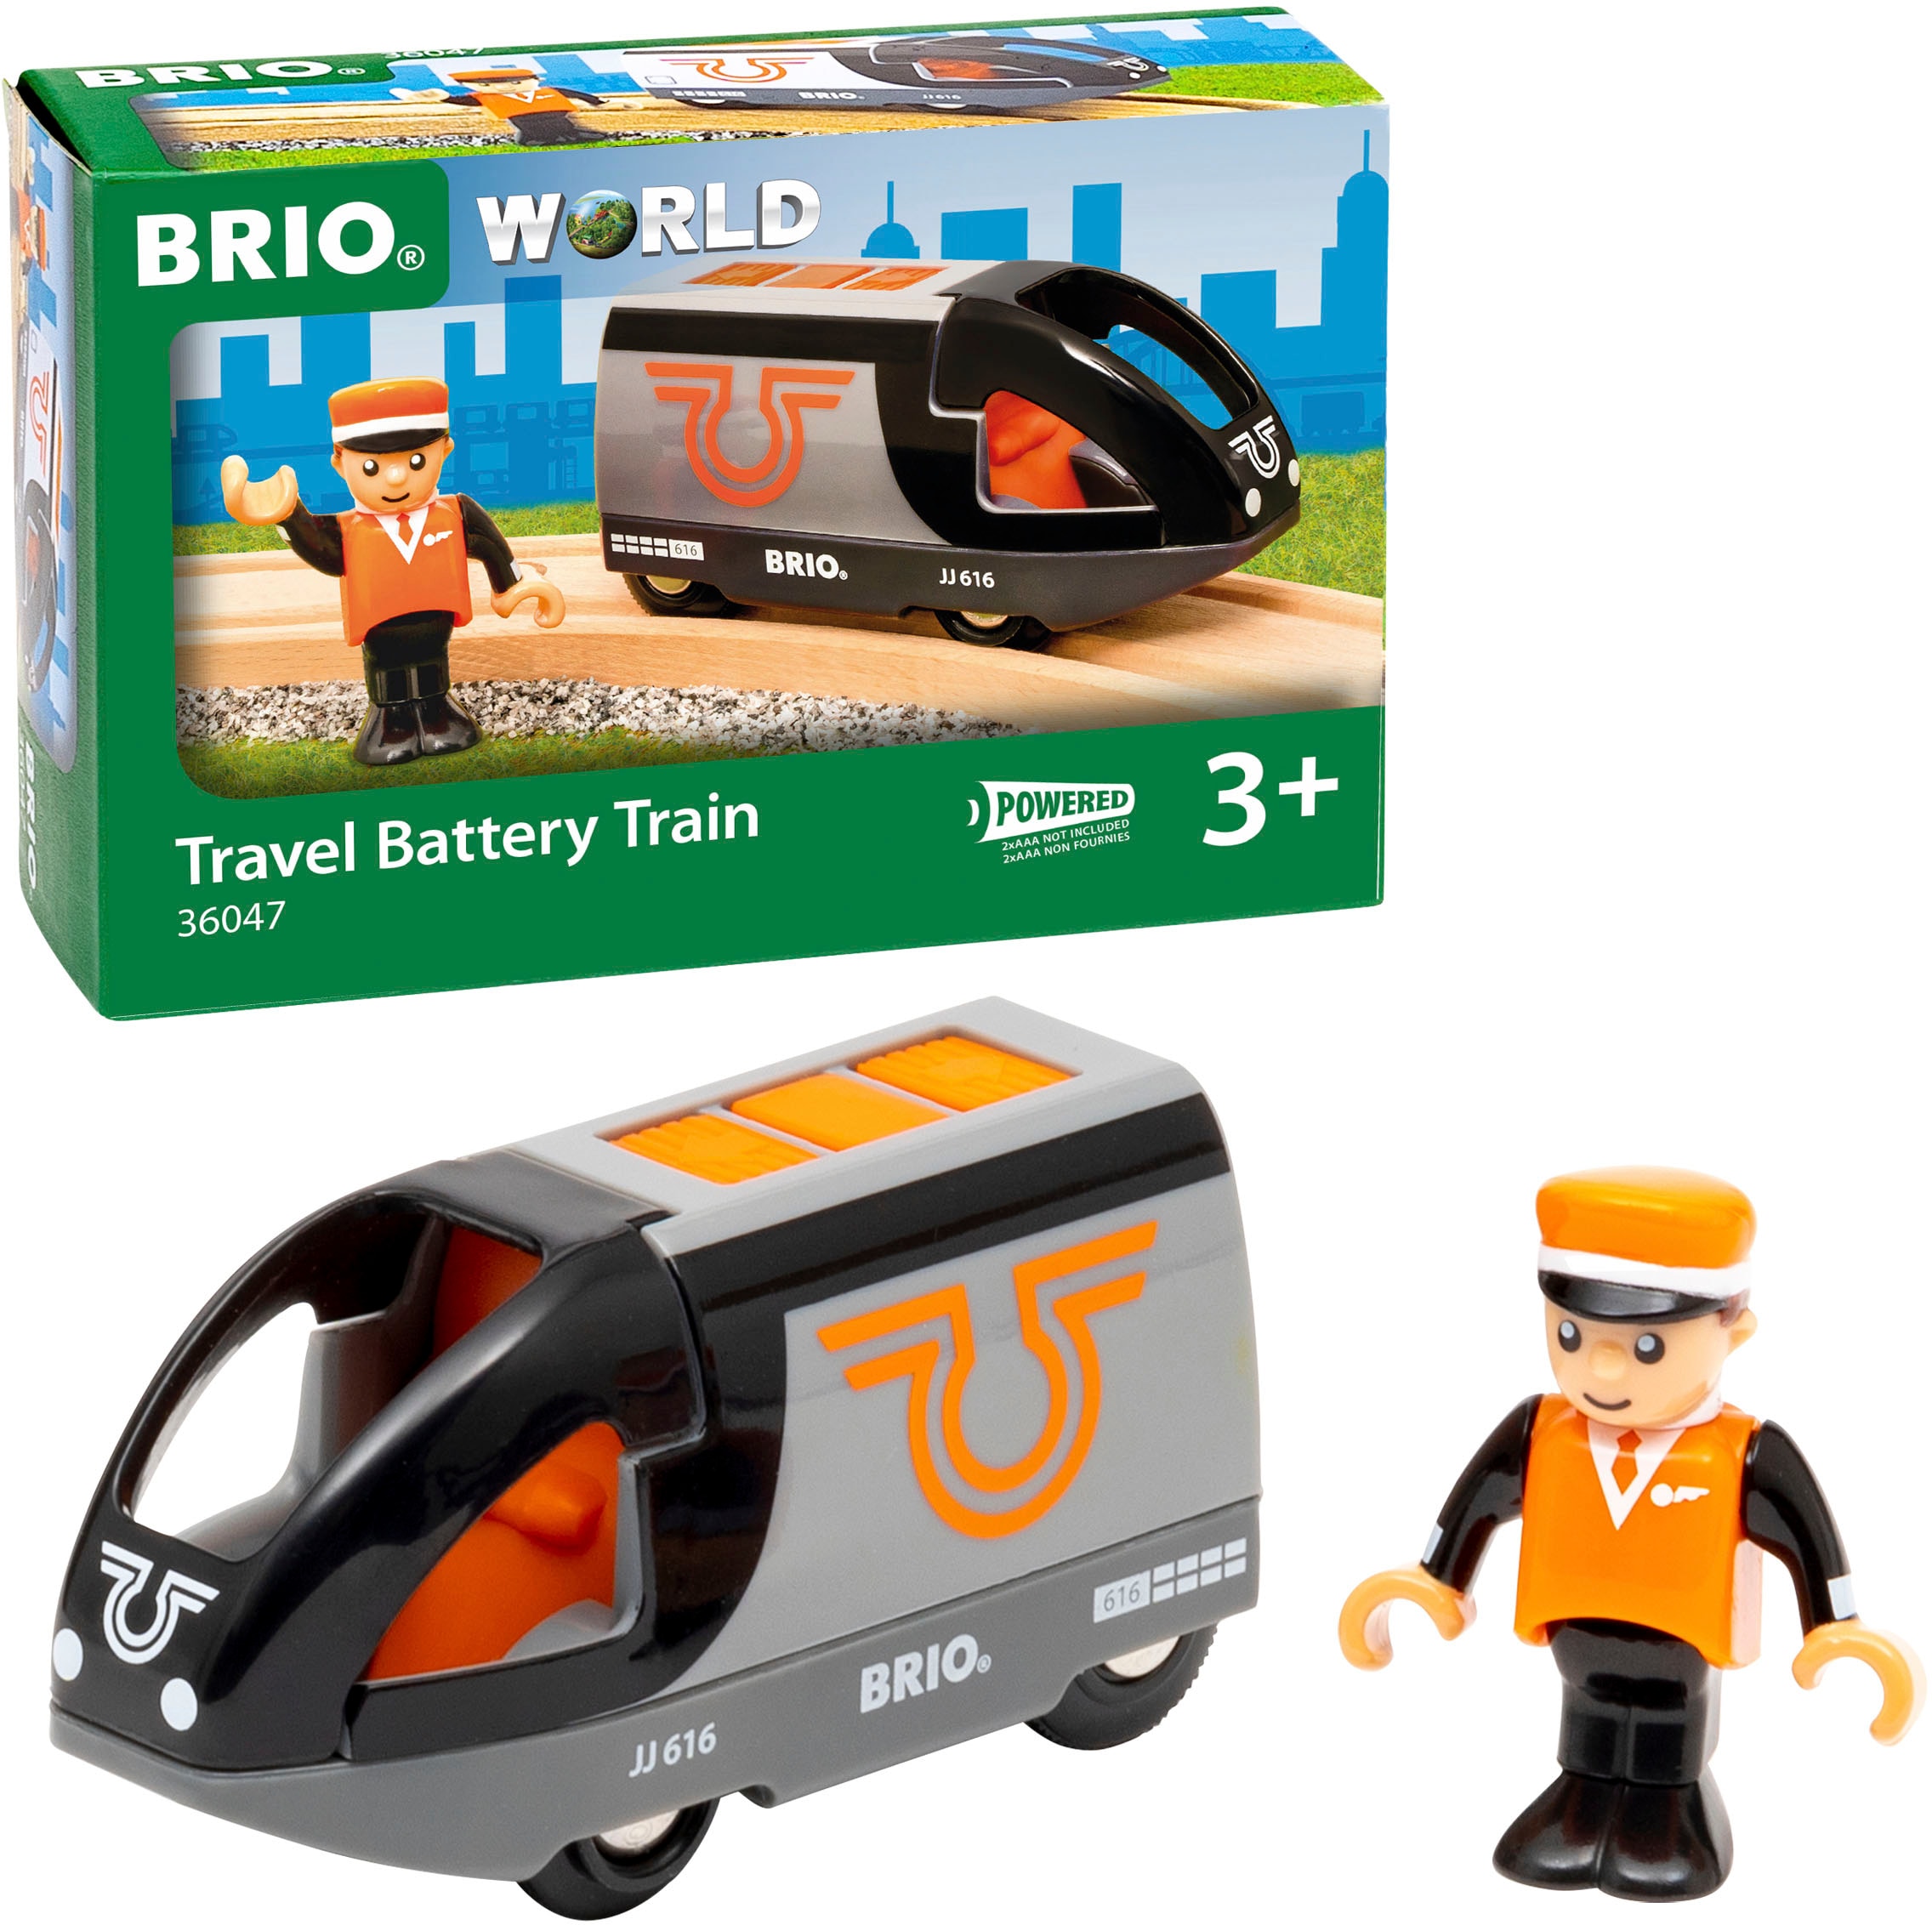 Spielzeug-Eisenbahn »BRIO® WORLD, Orange-schwarzer Reisezug«